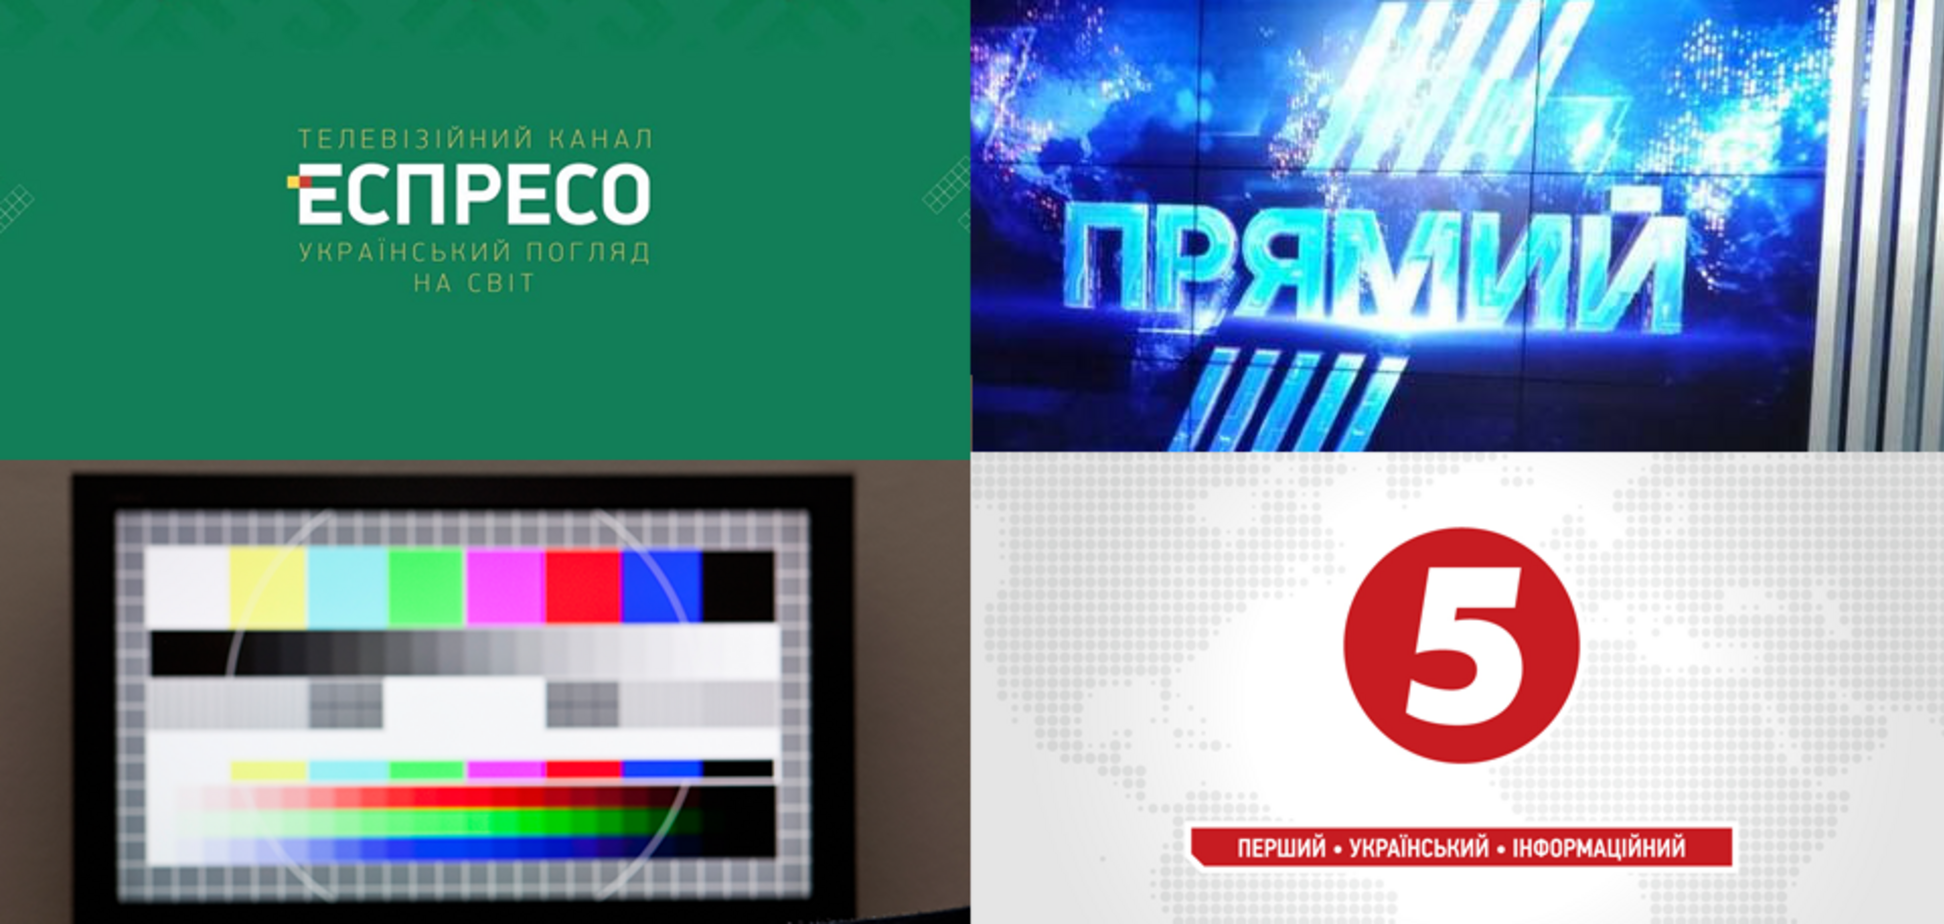 Коллективы 'Эспрессо', 'Прямого' и '5 канала' обратились к Зеленскому насчет отключения из эфира